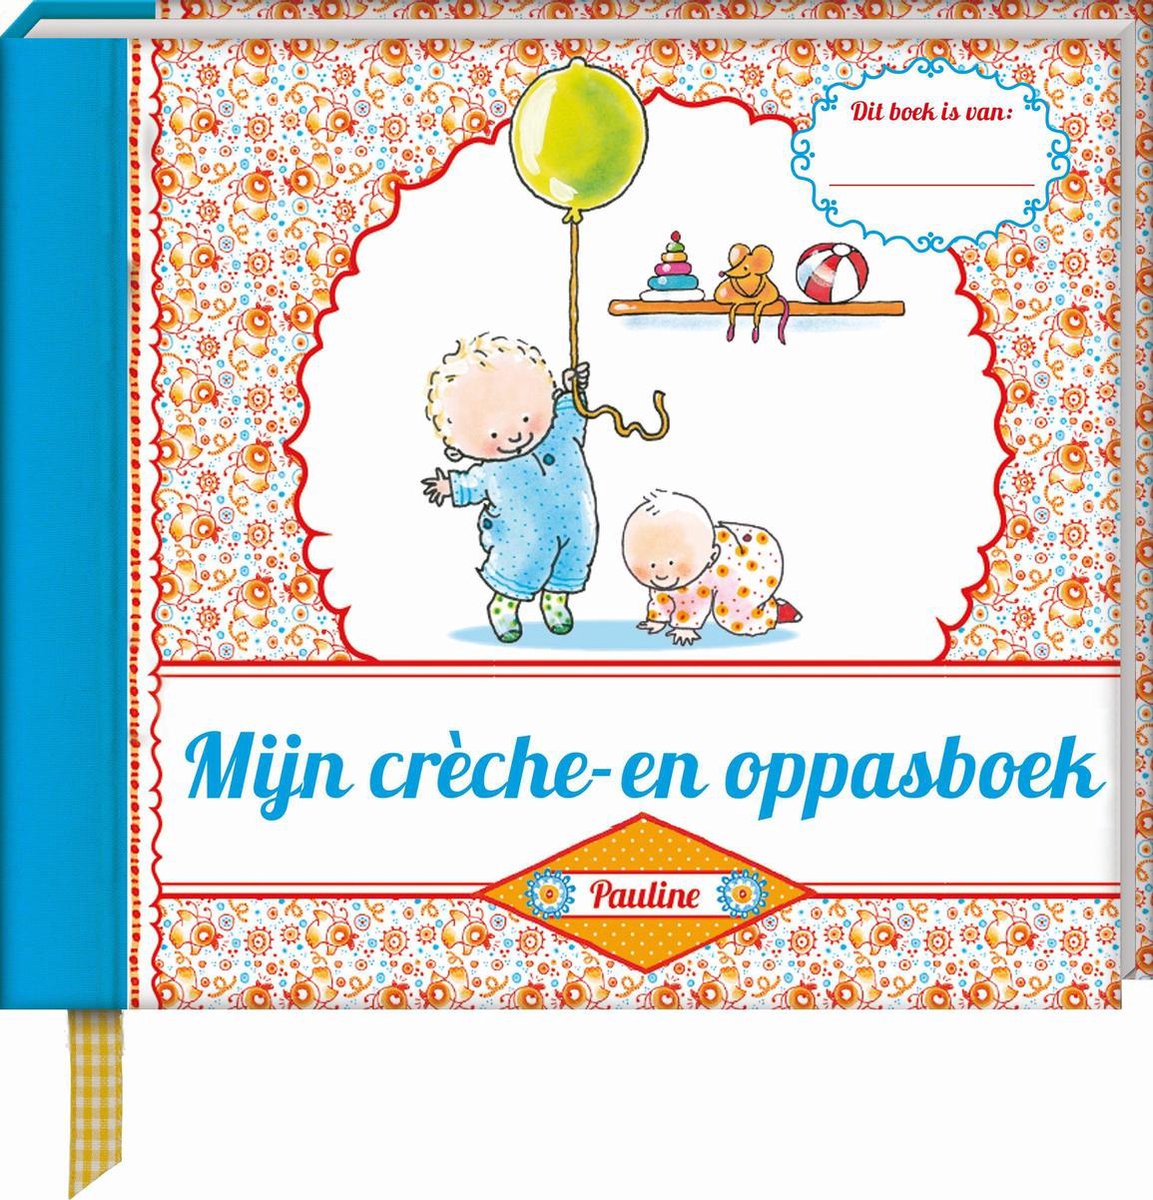 Image Mijn creche- en oppasboek adv.15,95 - Pauline Oud